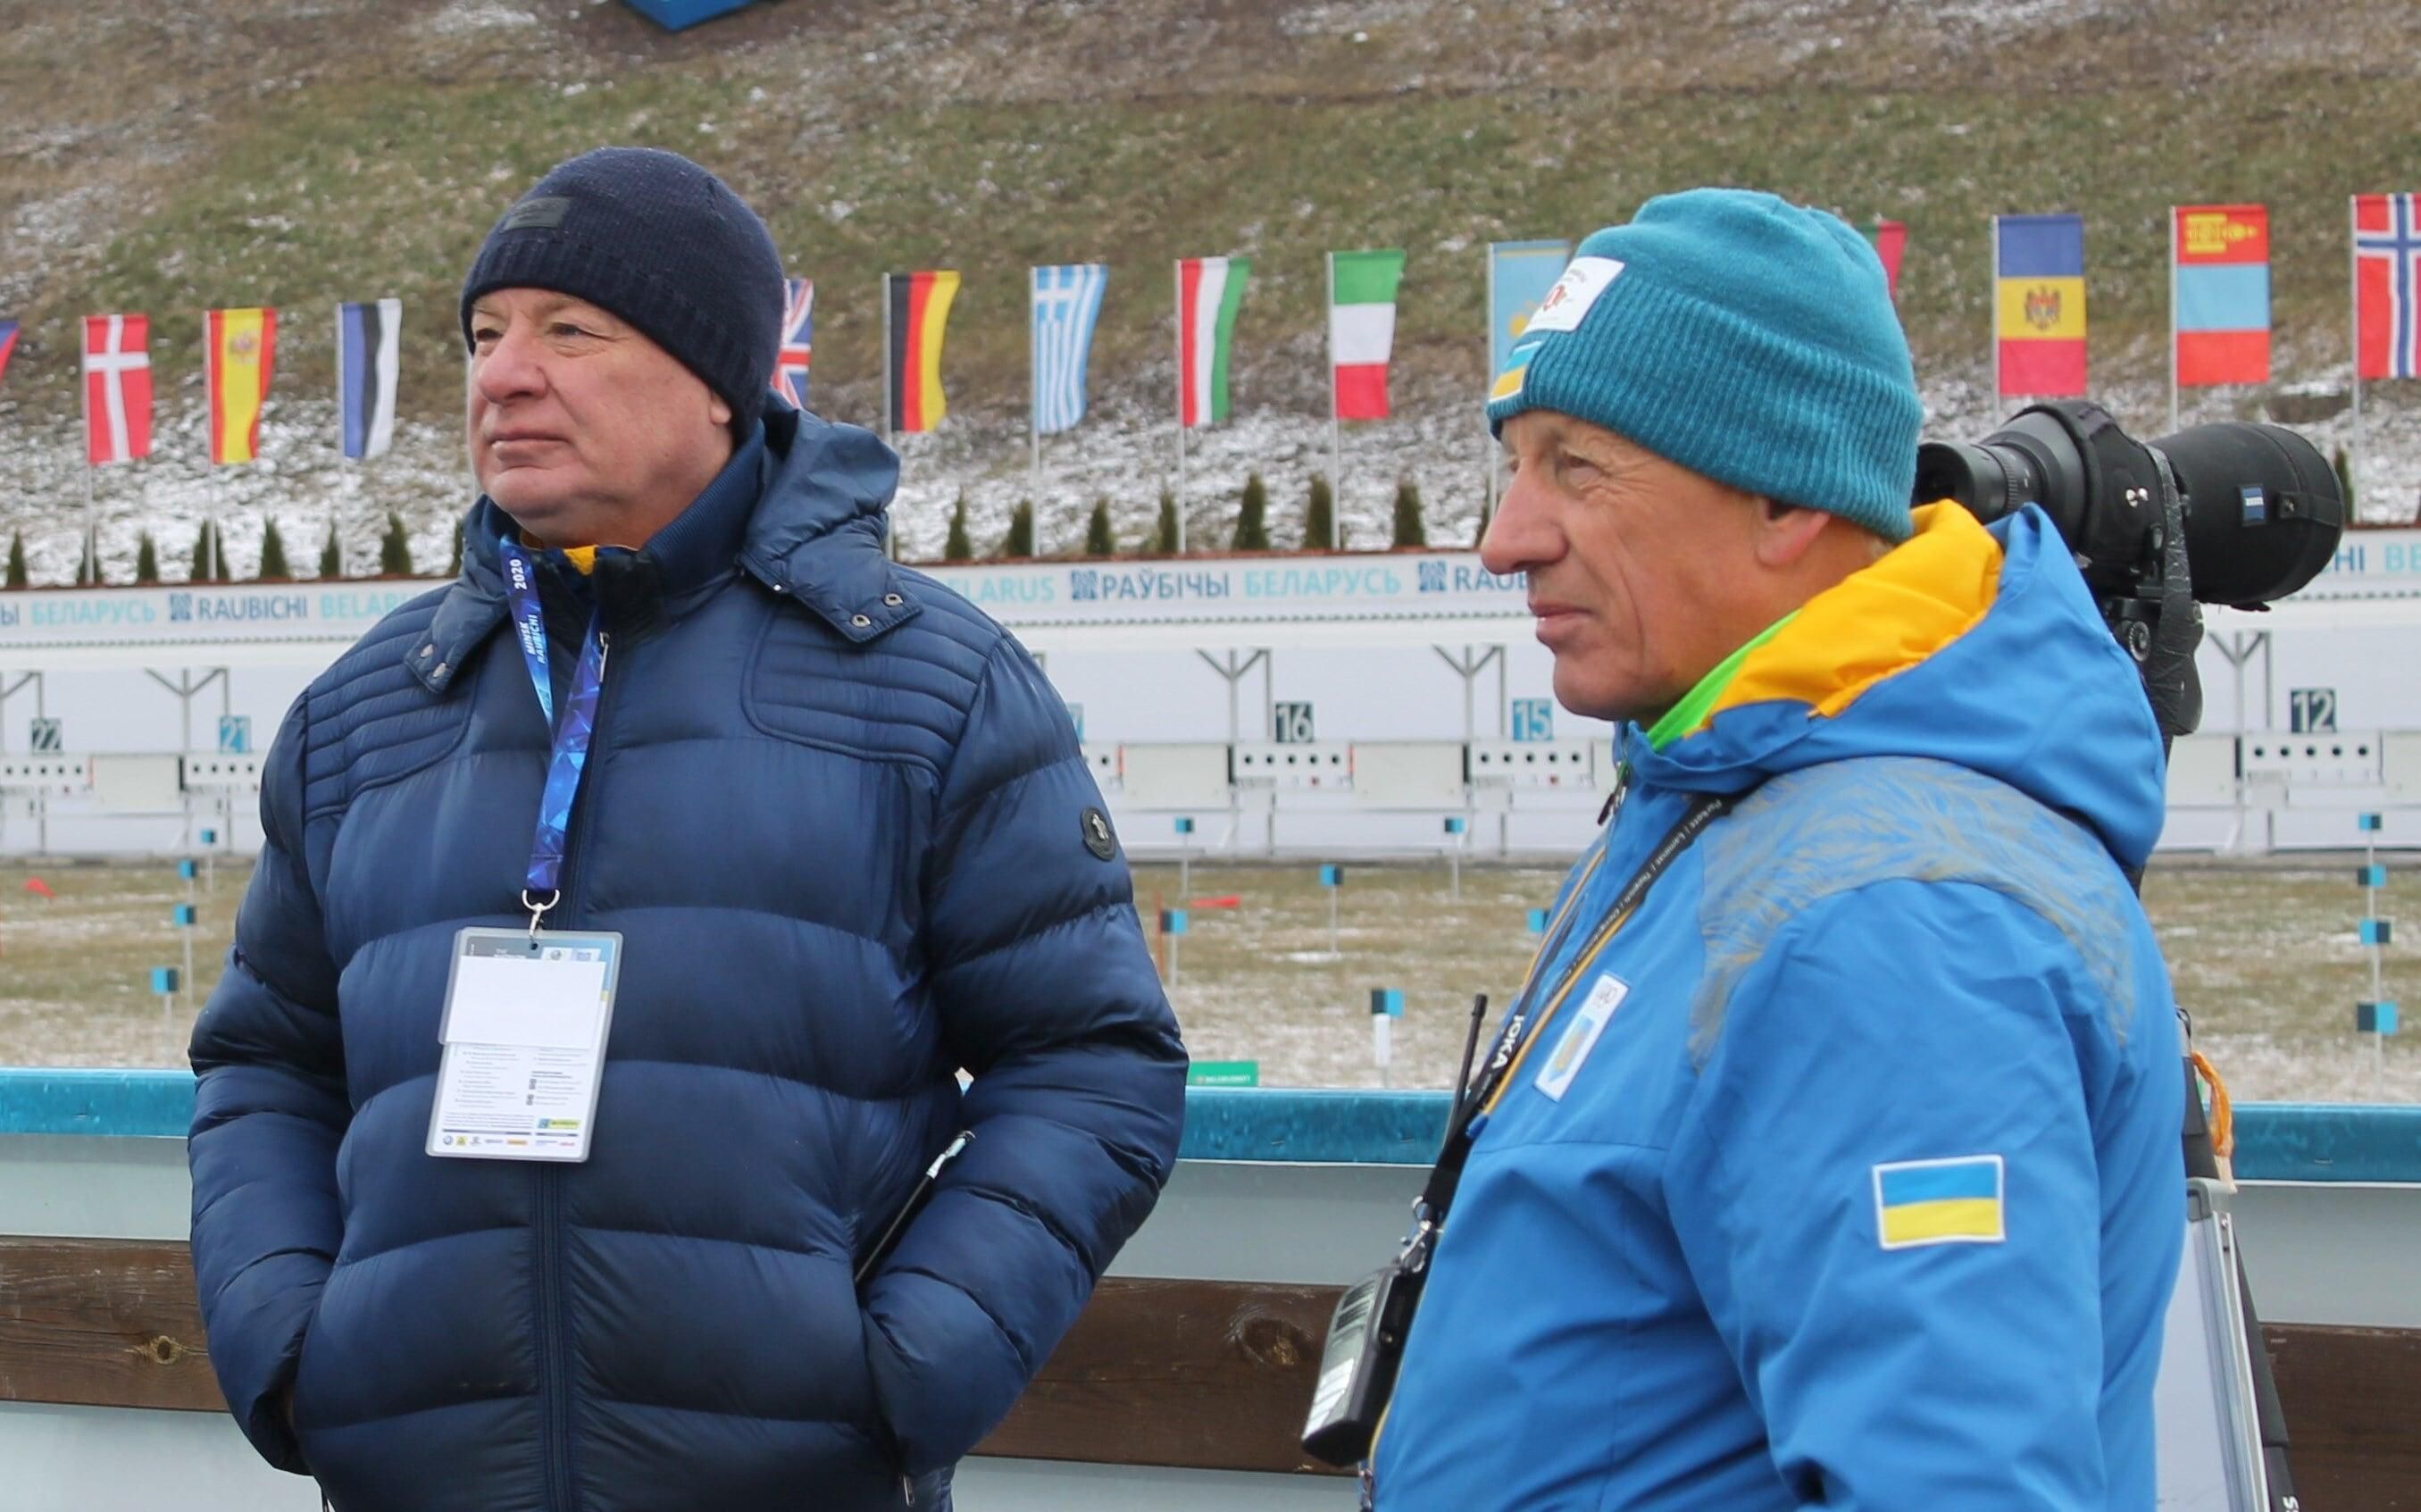 Коли Санітра зможе відновити роботу зі збірною України на Олімпіаді: відповідь Бринзака - Спорт 24